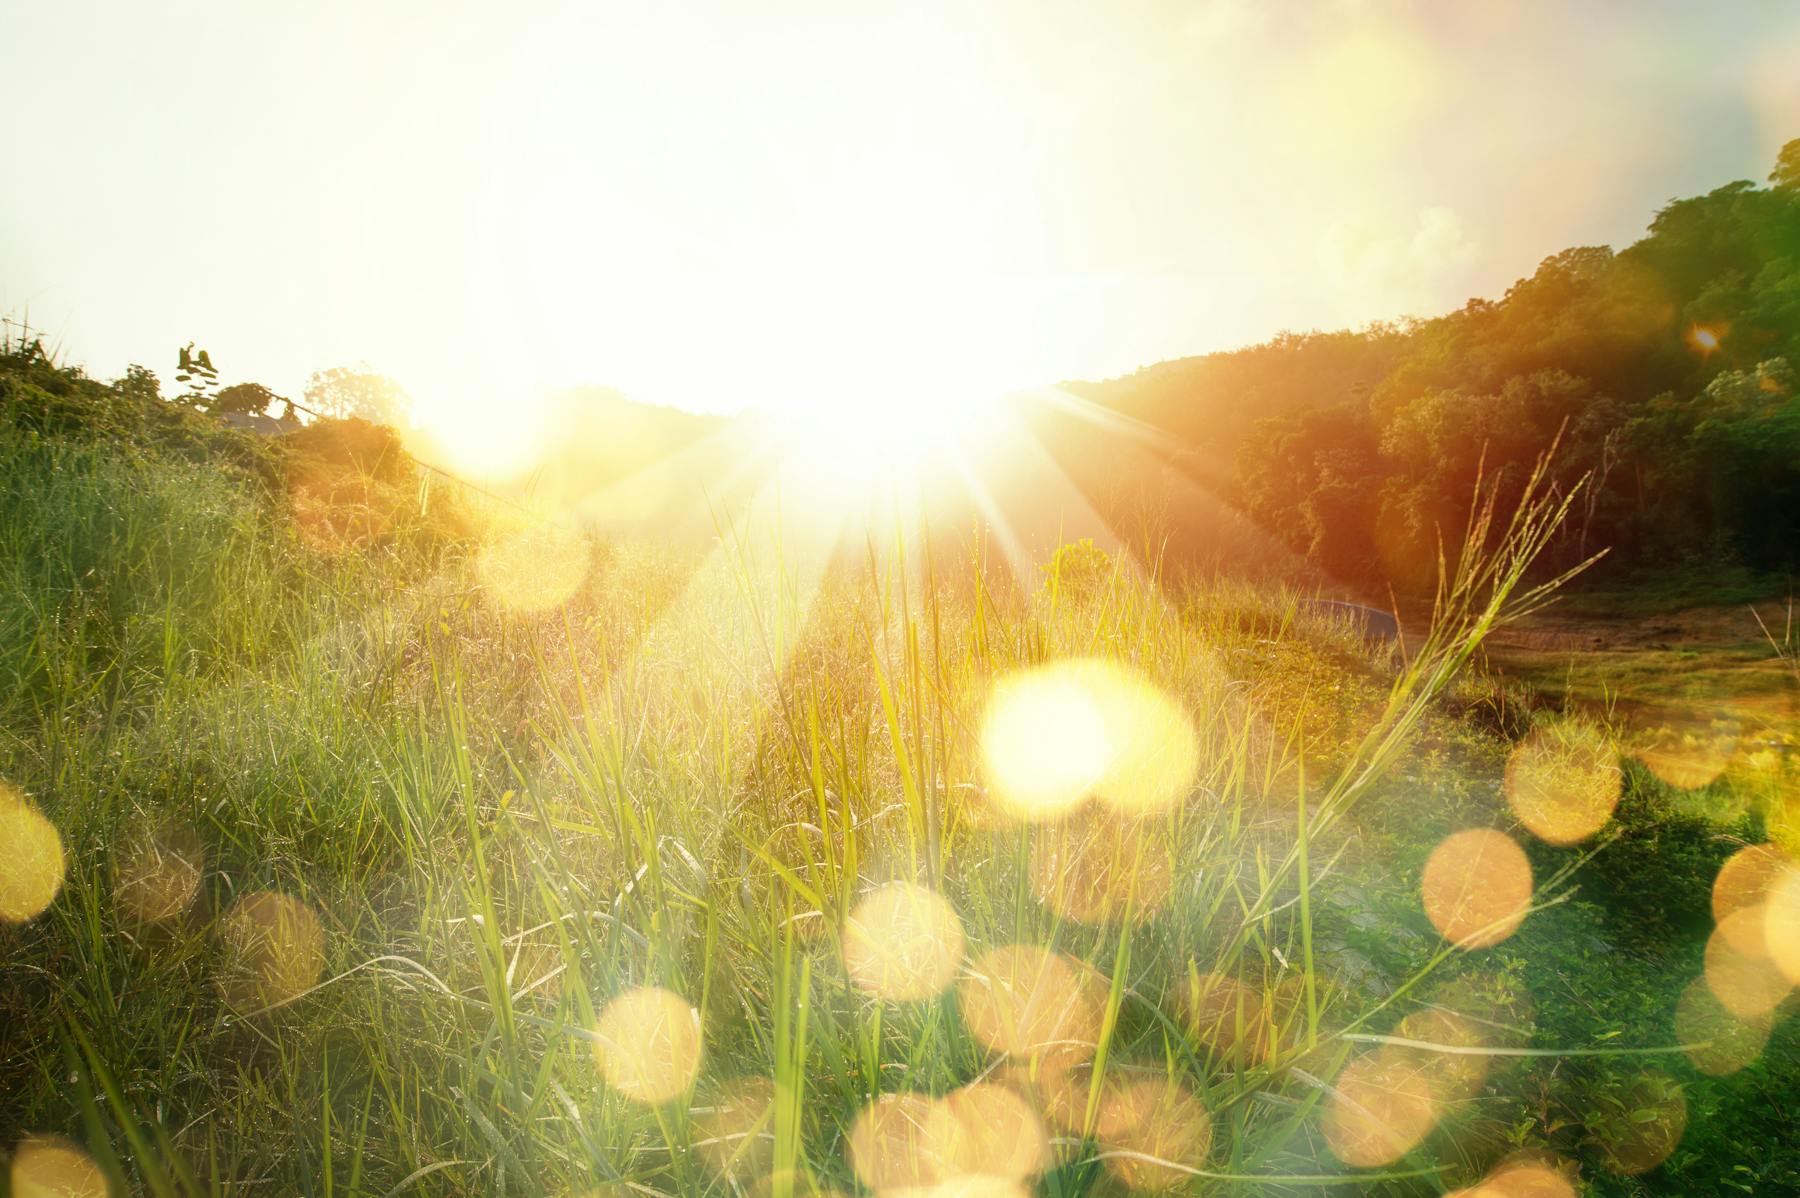 Ein atemberaubender Sonnenaufgang in einer malerischen Bergwiese. Die Sonnenstrahlen durchdringen den Morgennebel und erzeugen ein magisches goldenes Bokeh.